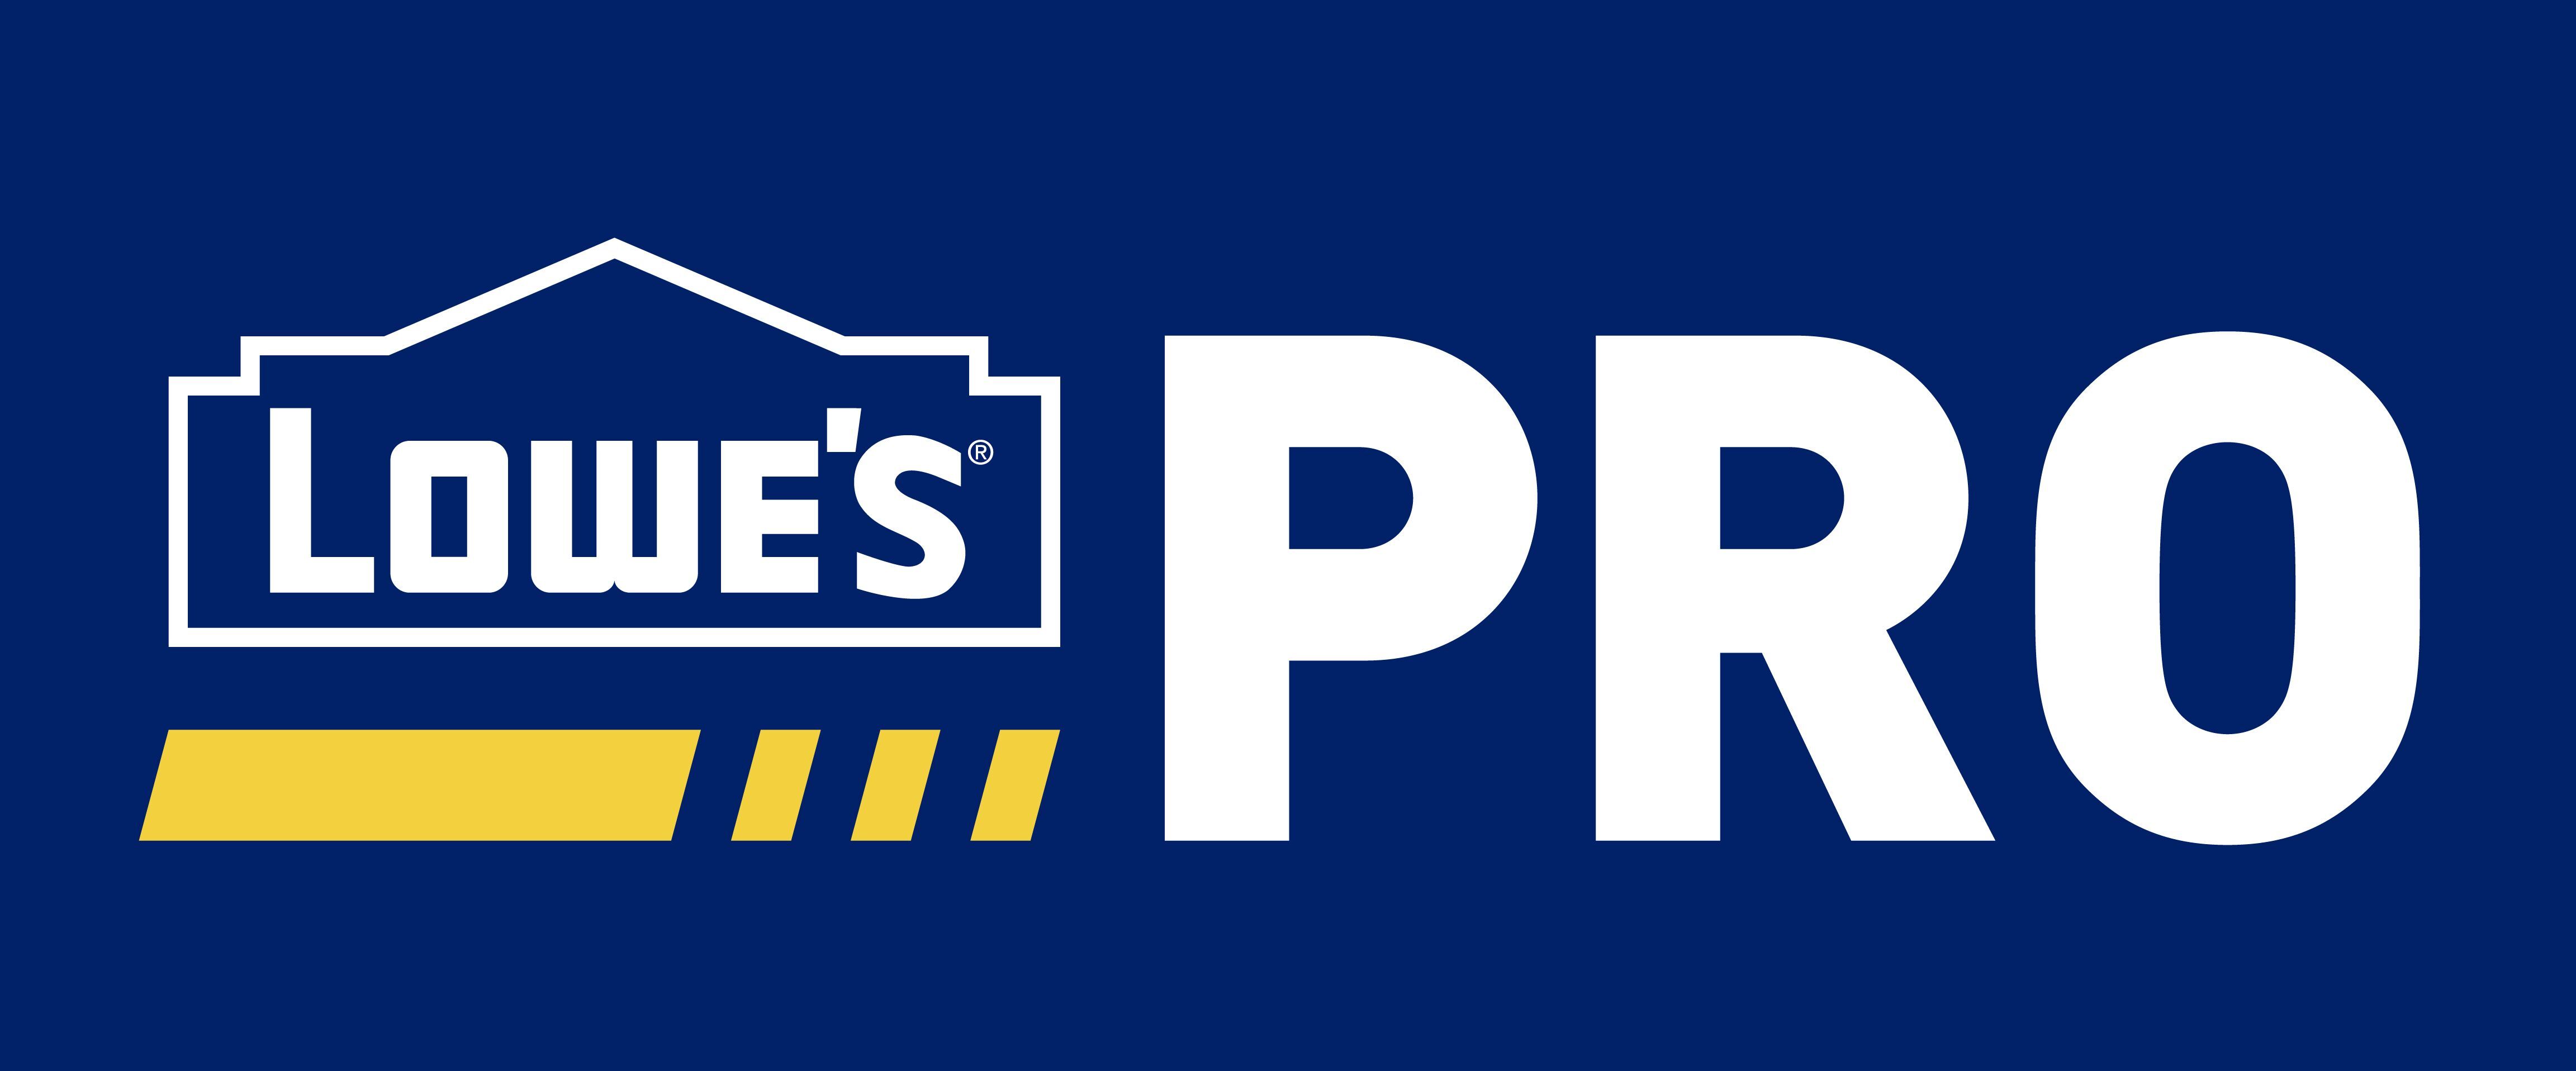 Lowe's Pro Logo